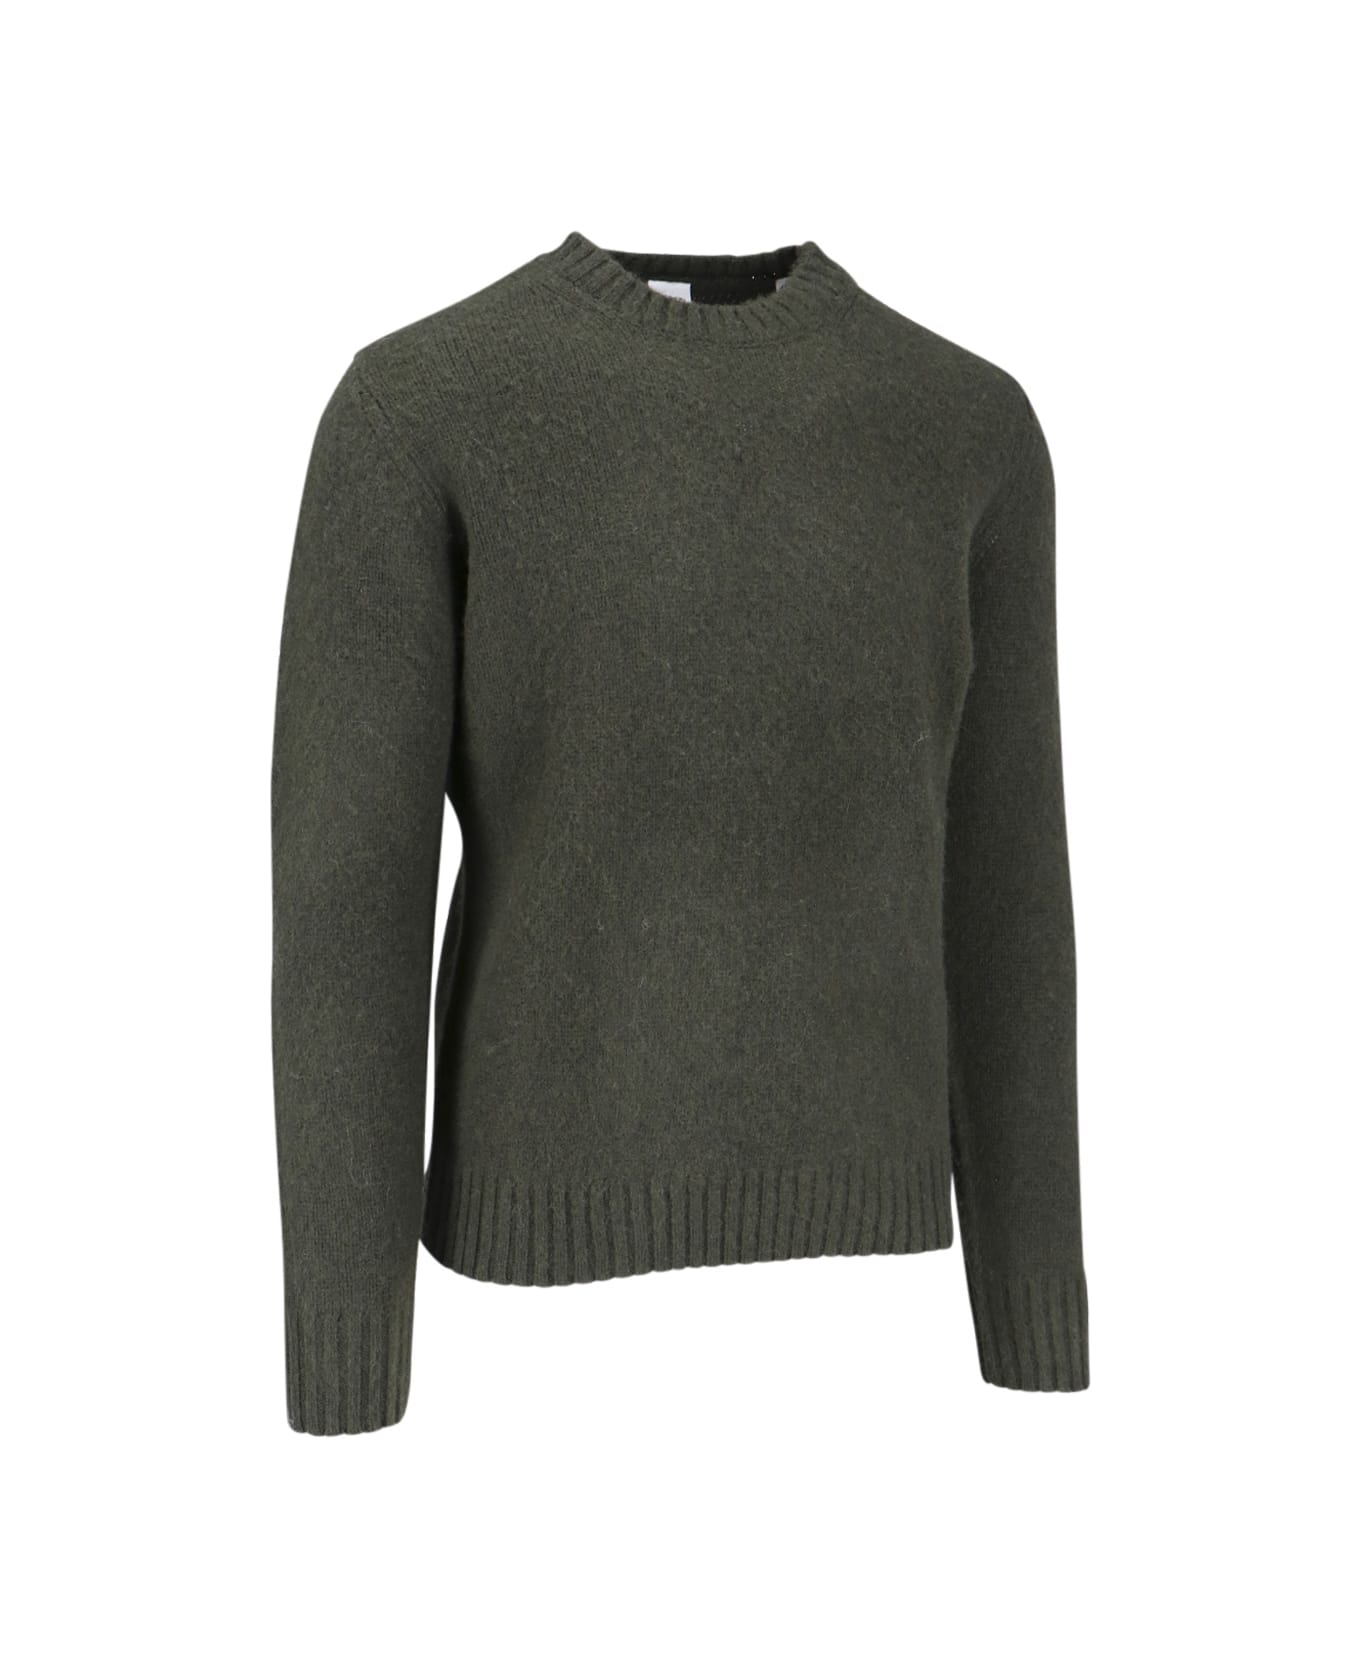 Aspesi 'm183' Sweater - MILITARY GREEN ニットウェア